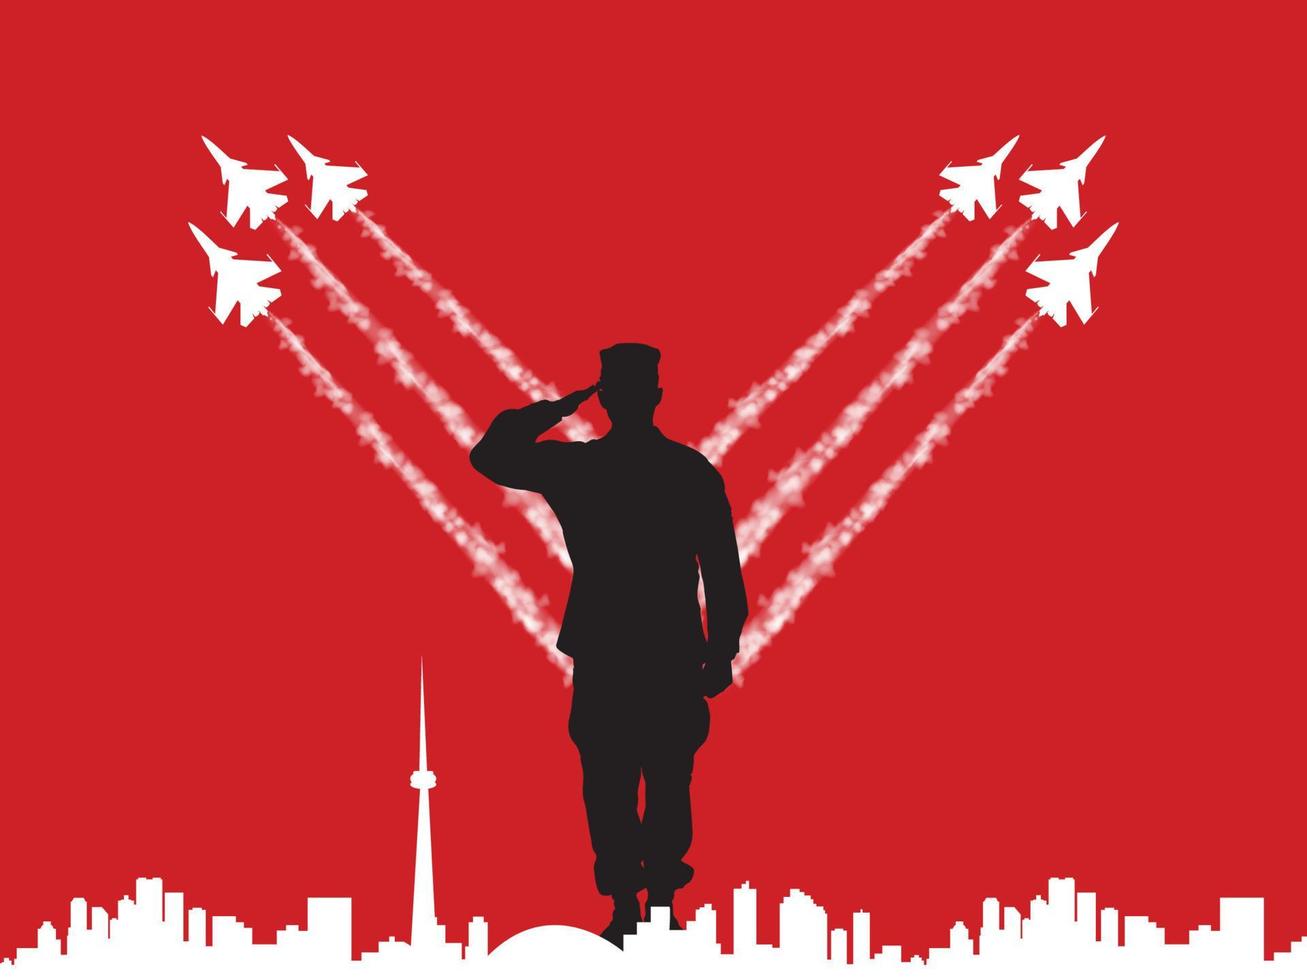 Ein kanadischer Soldat salutiert und Kampfjets fliegen mit Ehre. plakatdesign für kanada, stolze kanadische soldaten, wahrzeichen von kanada. vektor